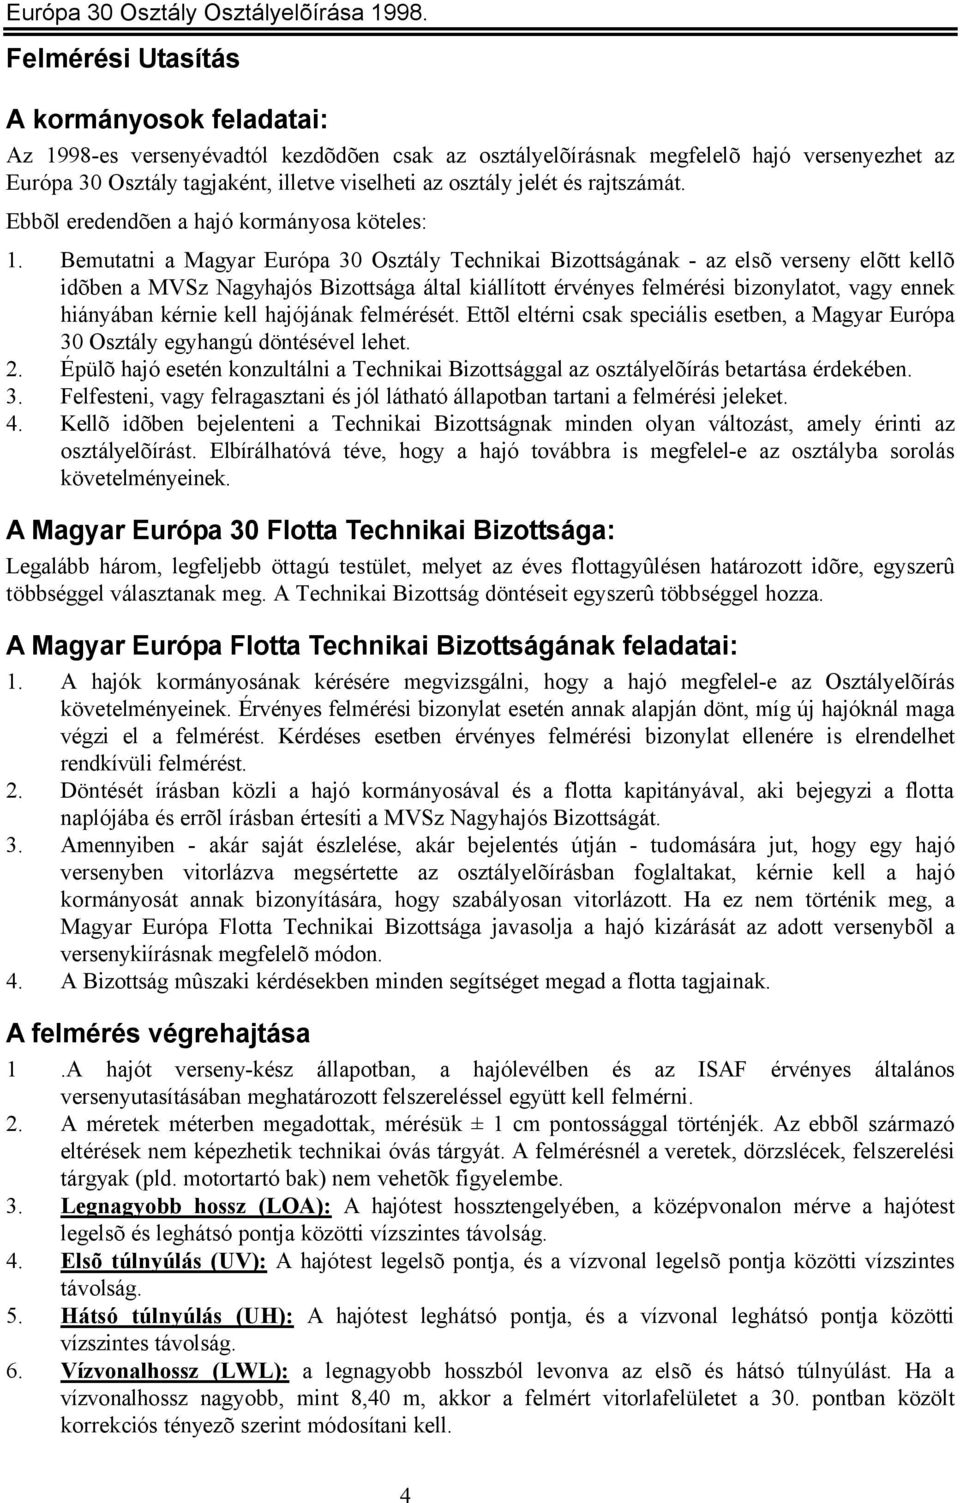 Bemutatni a Magyar Európa 30 Osztály Technikai Bizottságának - az elsõ verseny elõtt kellõ idõben a MVSz Nagyhajós Bizottsága által kiállított érvényes felmérési bizonylatot, vagy ennek hiányában